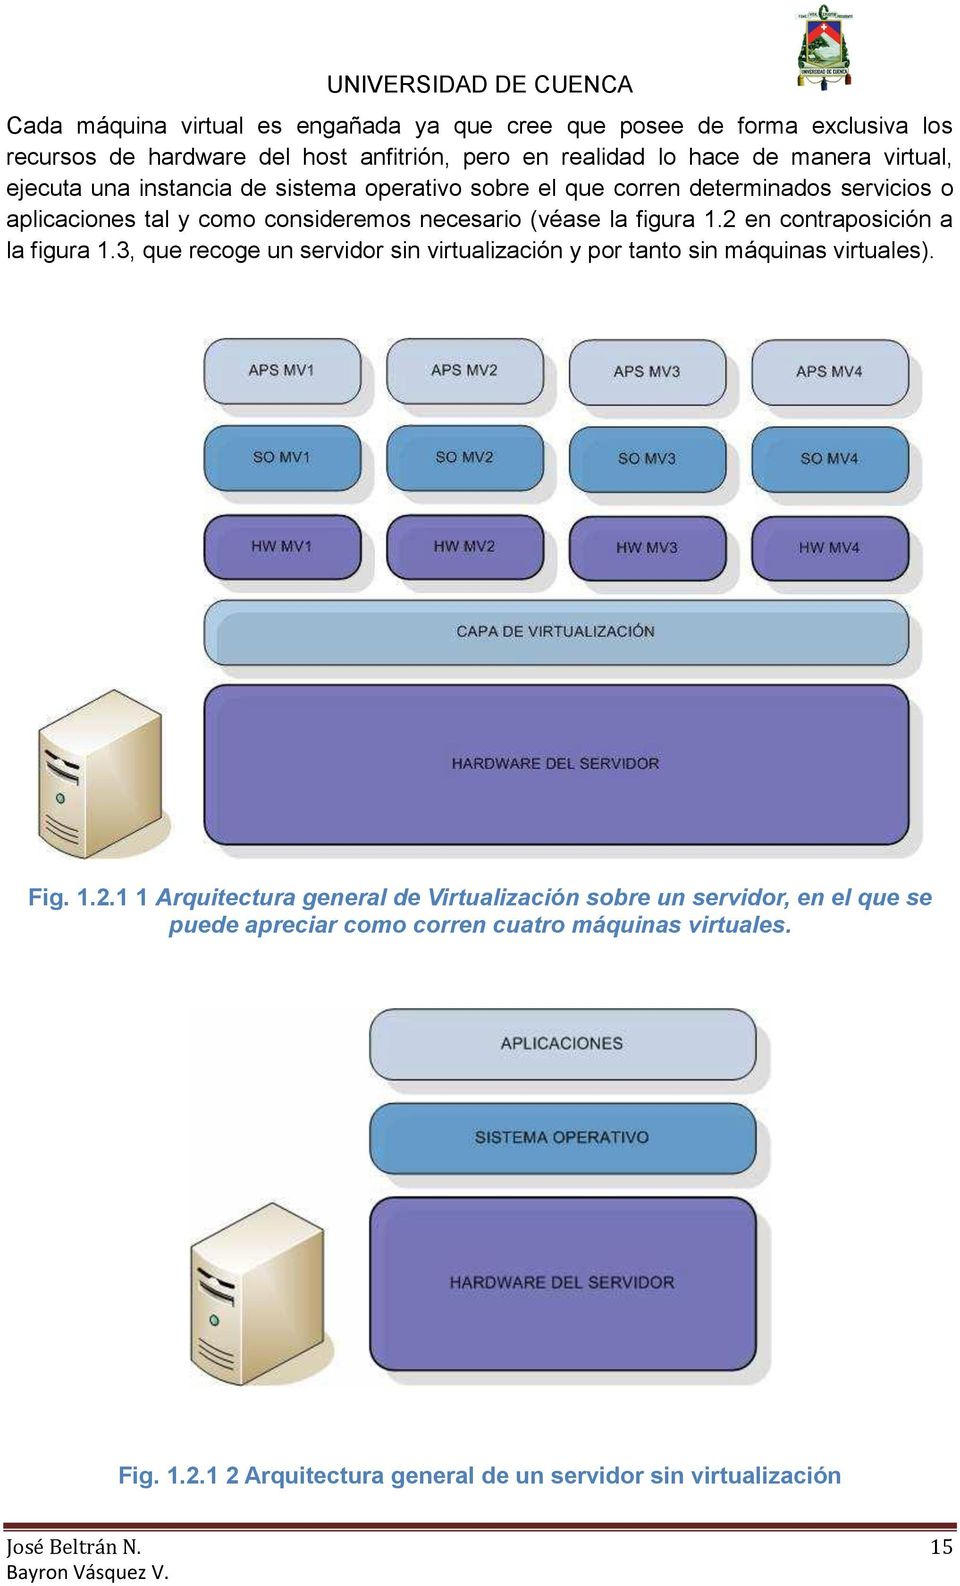 2 en contraposición a la figura 1.3, que recoge un servidor sin virtualización y por tanto sin máquinas virtuales). Fig. 1.2.1 1 Arquitectura general de Virtualización sobre un servidor, en el que se puede apreciar como corren cuatro máquinas virtuales.